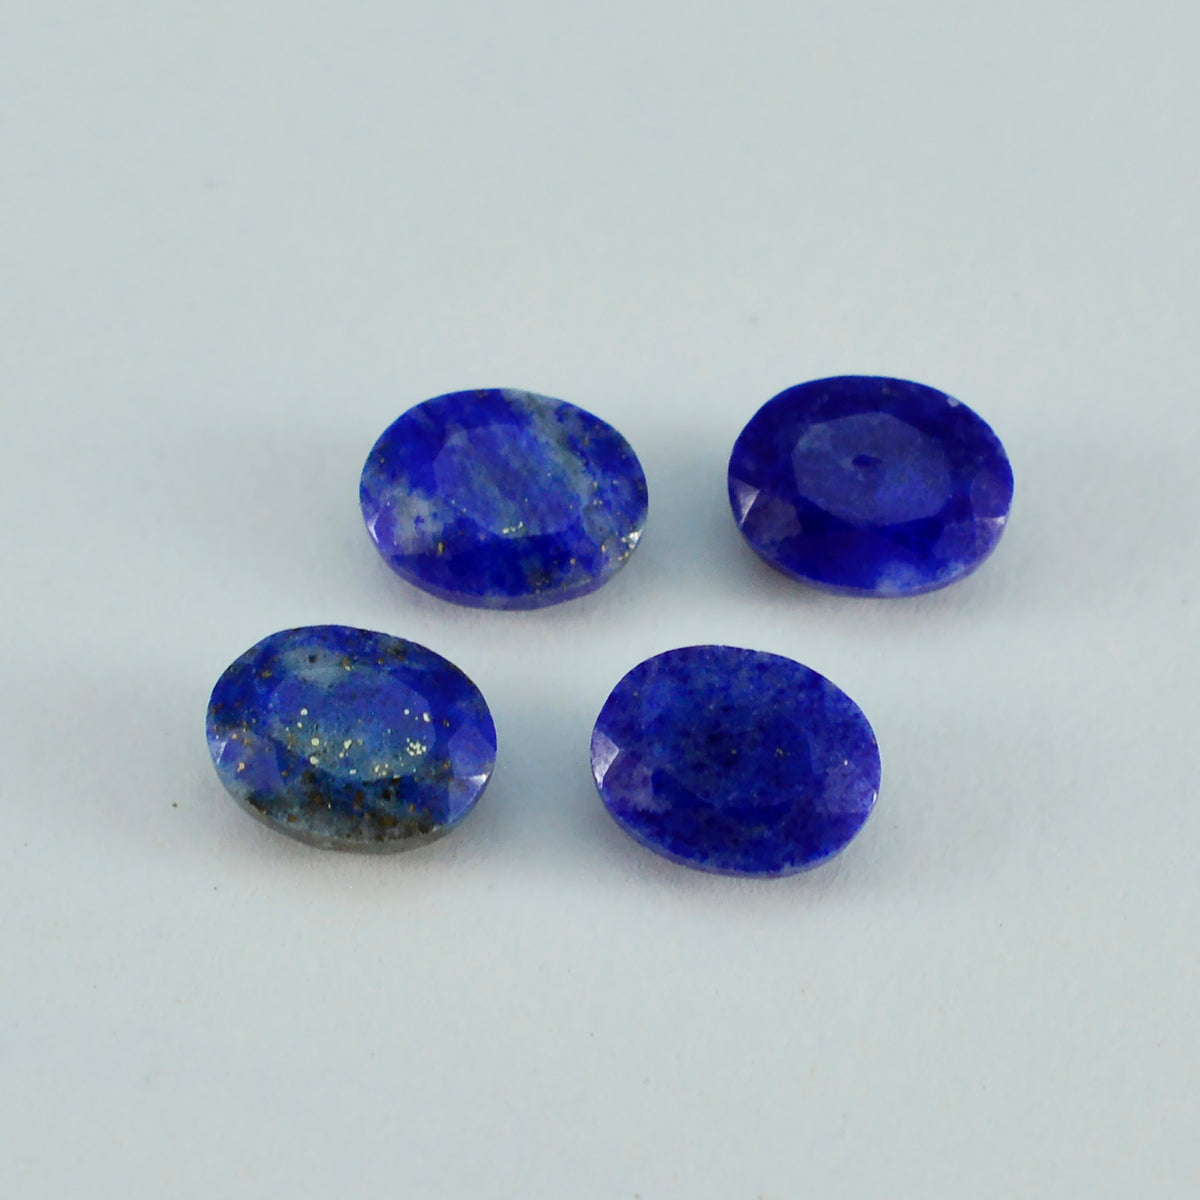 Riyogems 1PC Echte Blauwe Lapis Lazuli Facet 9x11 mm Ovale Vorm mooie Kwaliteit Losse Edelstenen